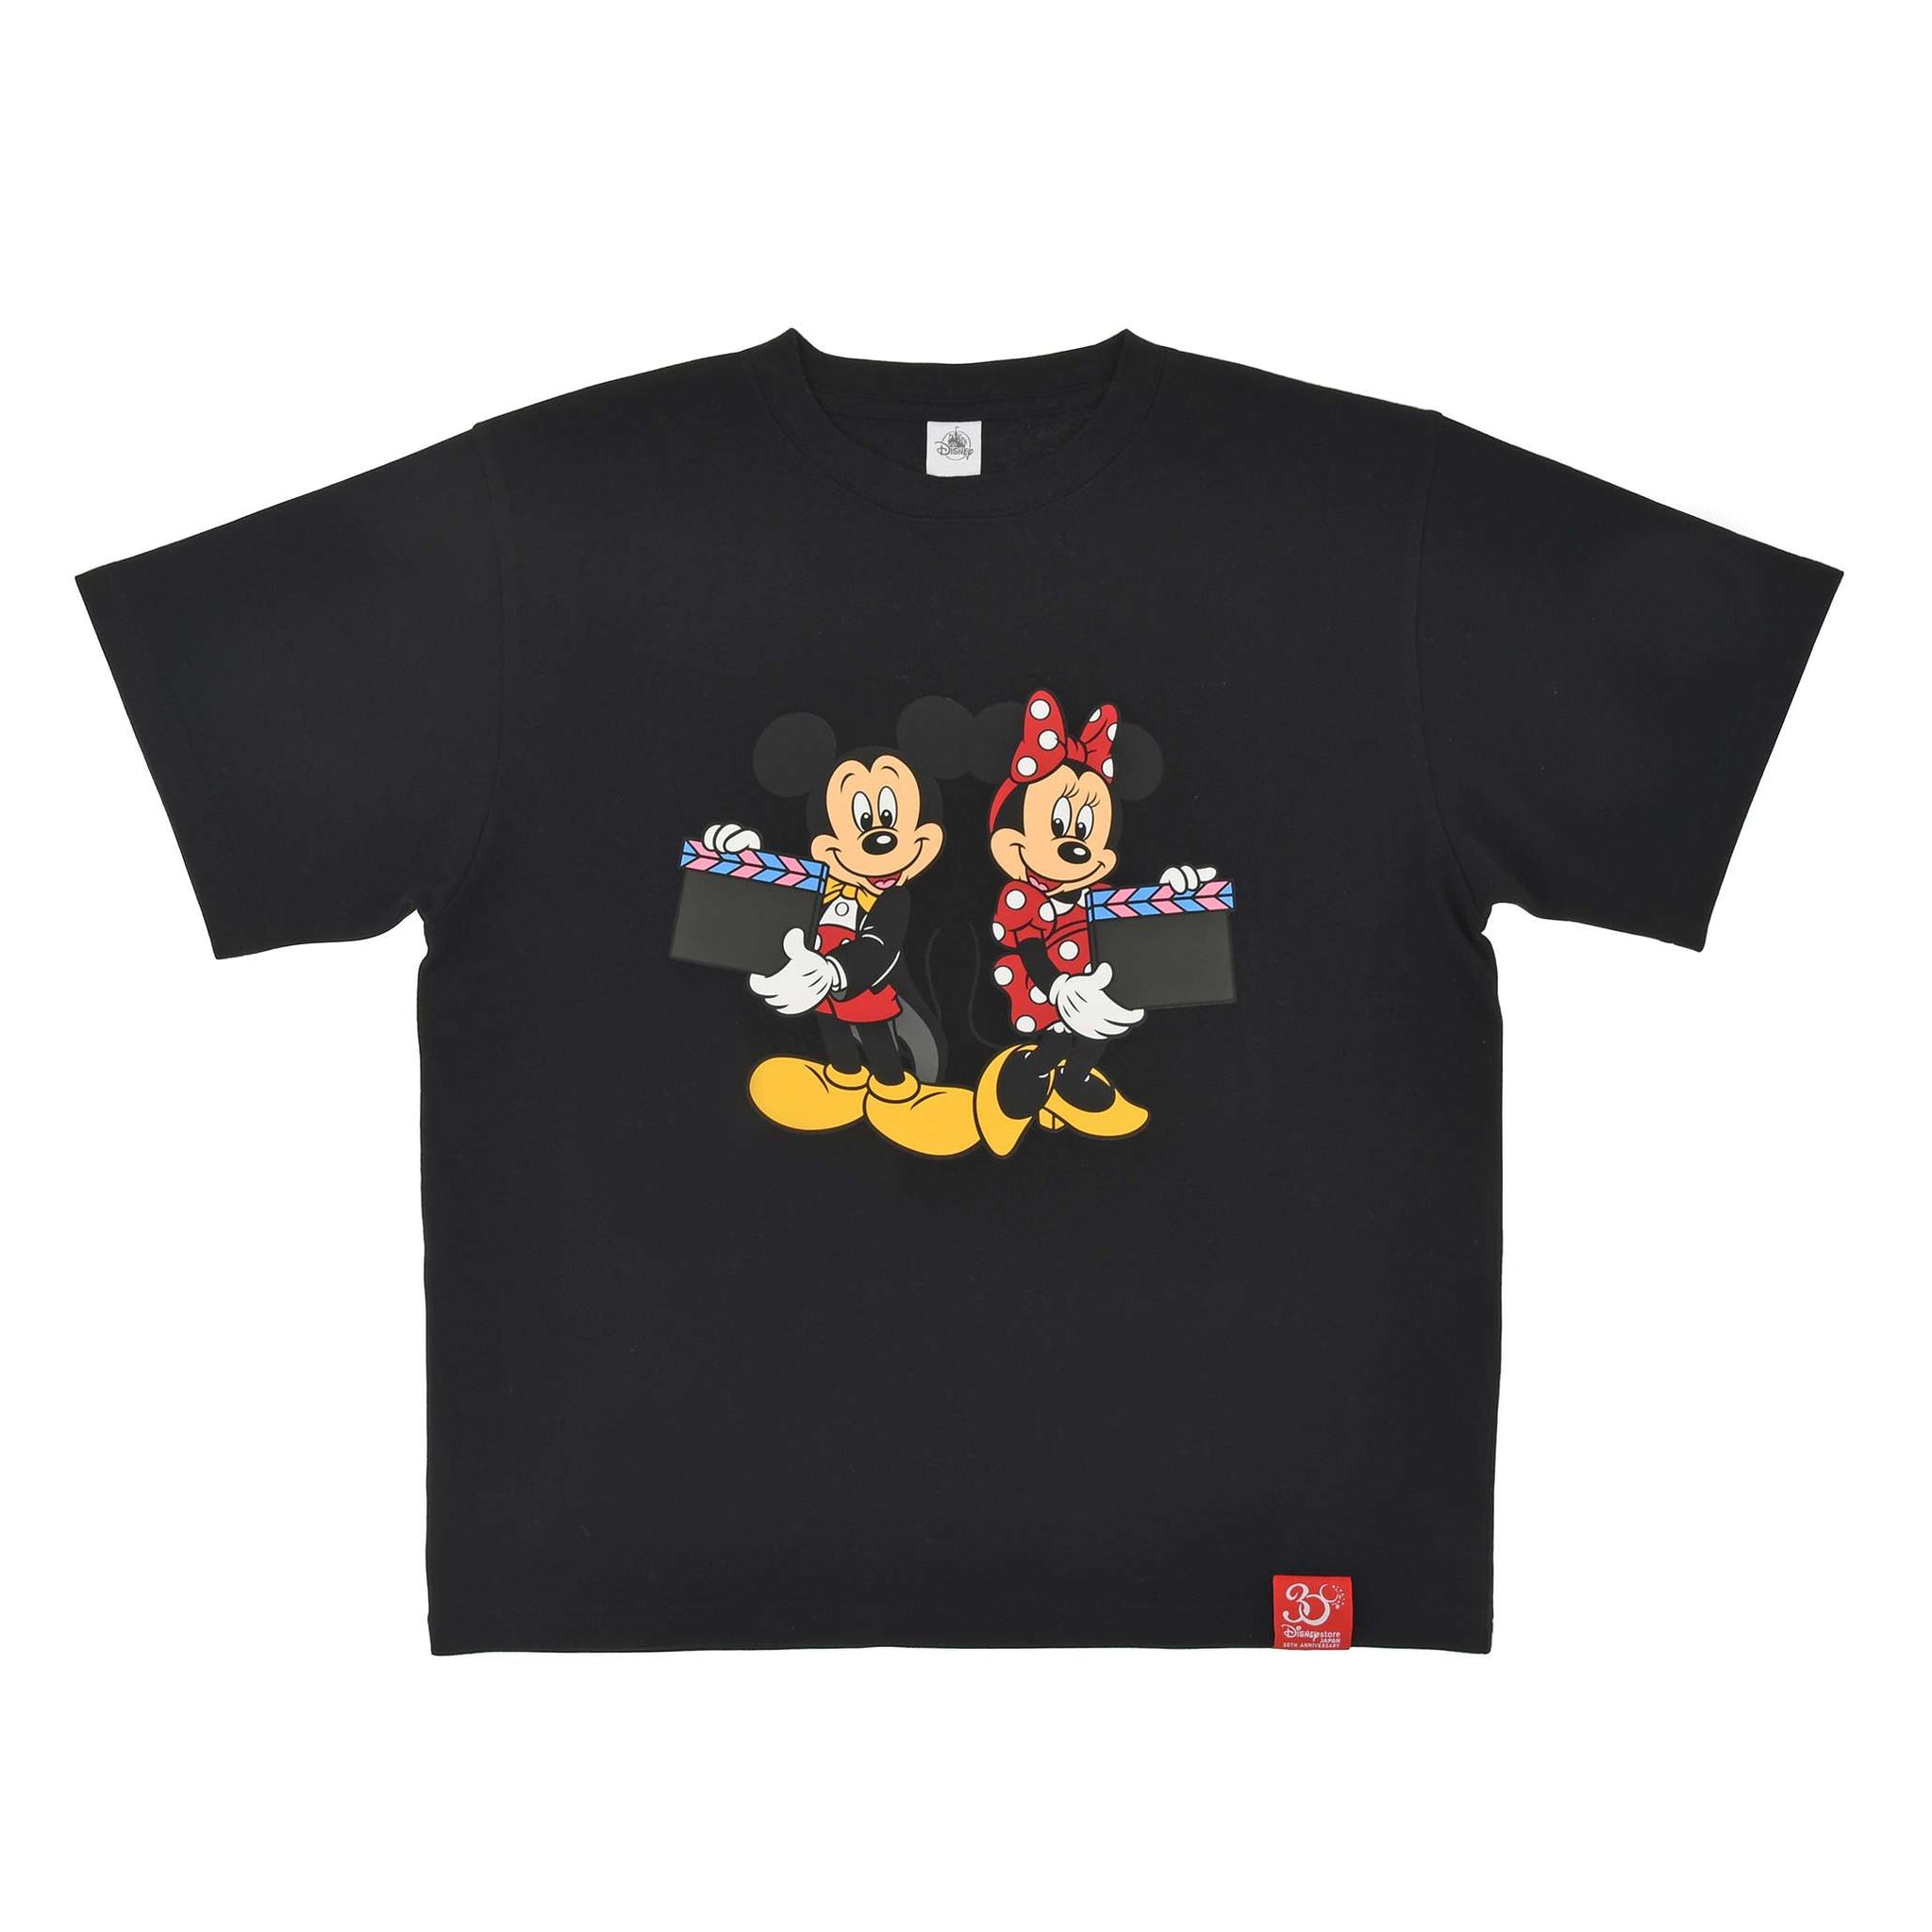 Disney Store - Mickey & Minnie - Disney Store Japan 30th Jubiläum - T-Shirt